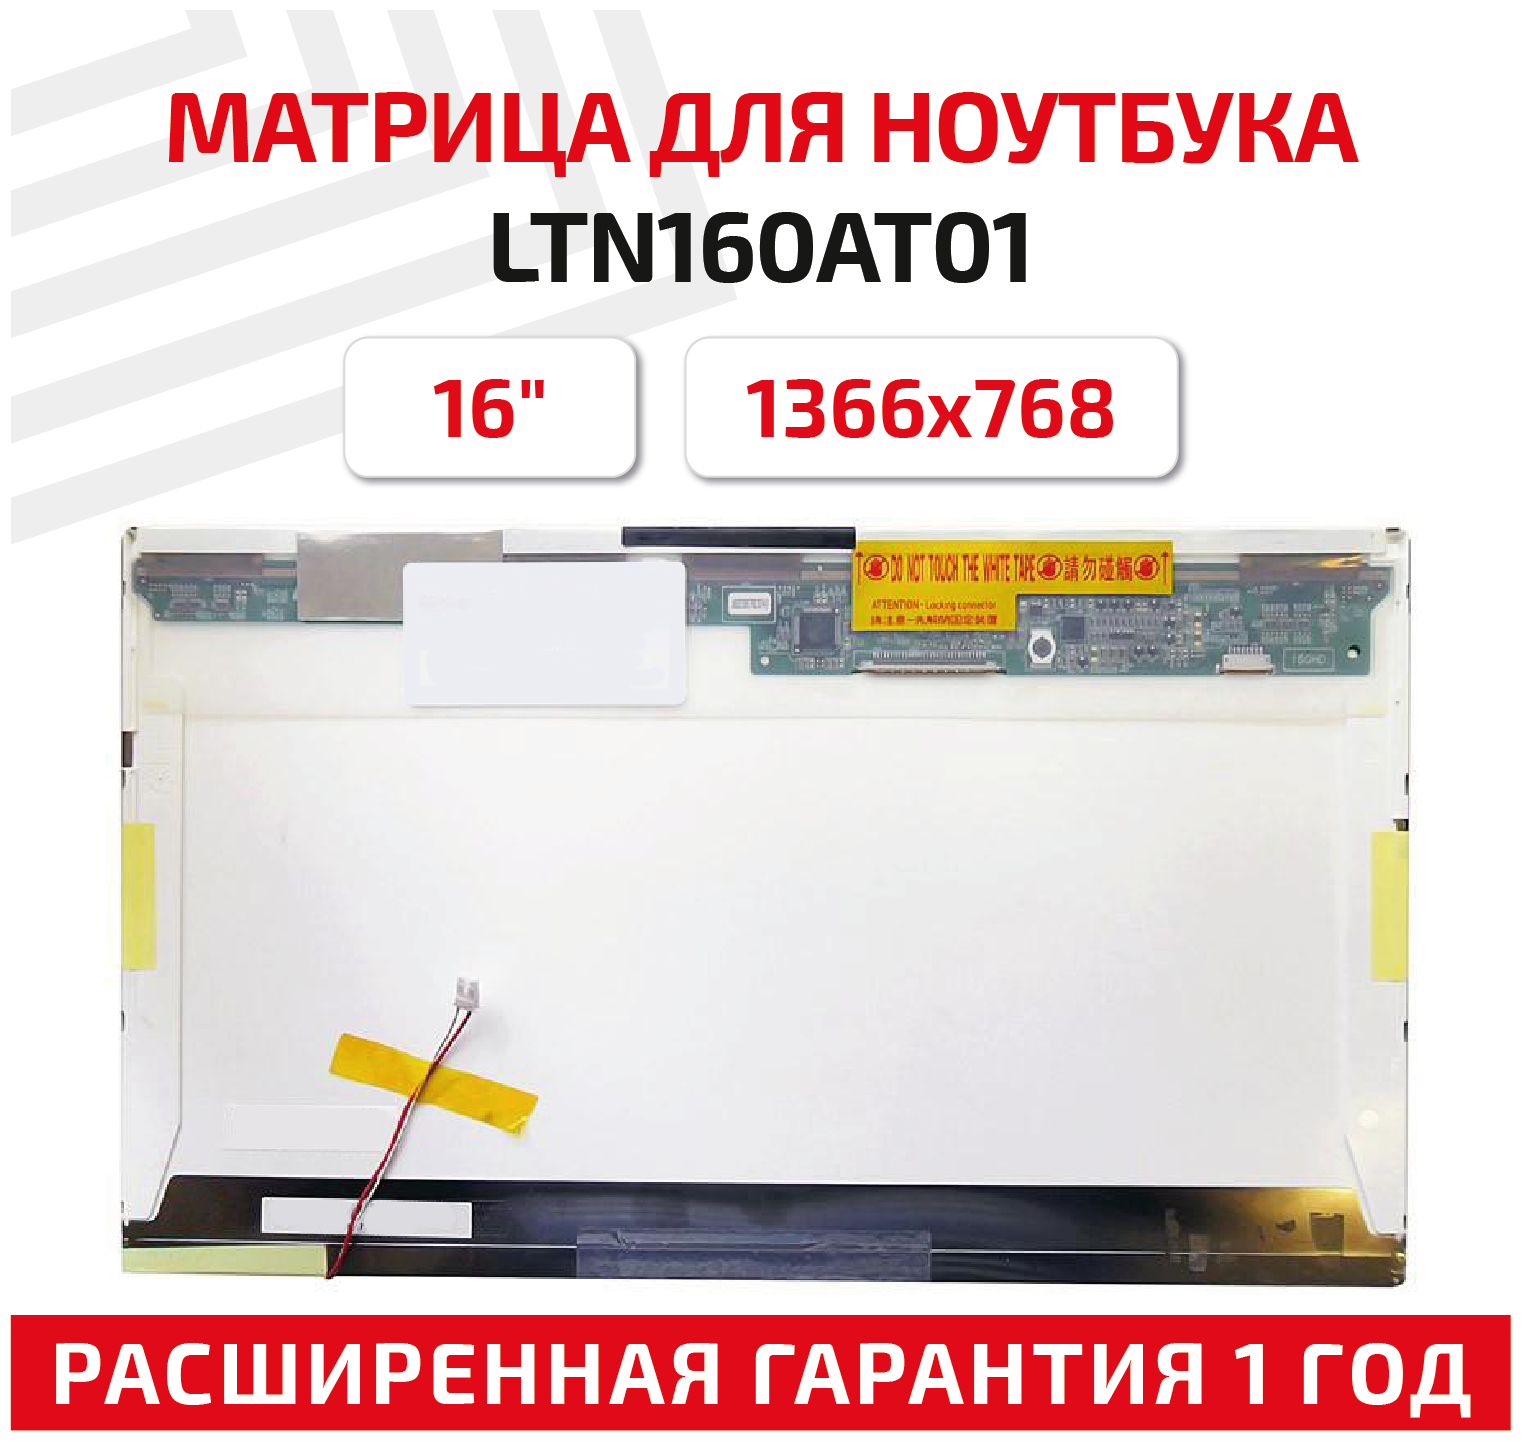 Матрица (экран) для ноутбука LTN160AT01, 16", 1366x768, Normal (стандарт), 30-pin, ламповая (1 CCFL), глянцевая